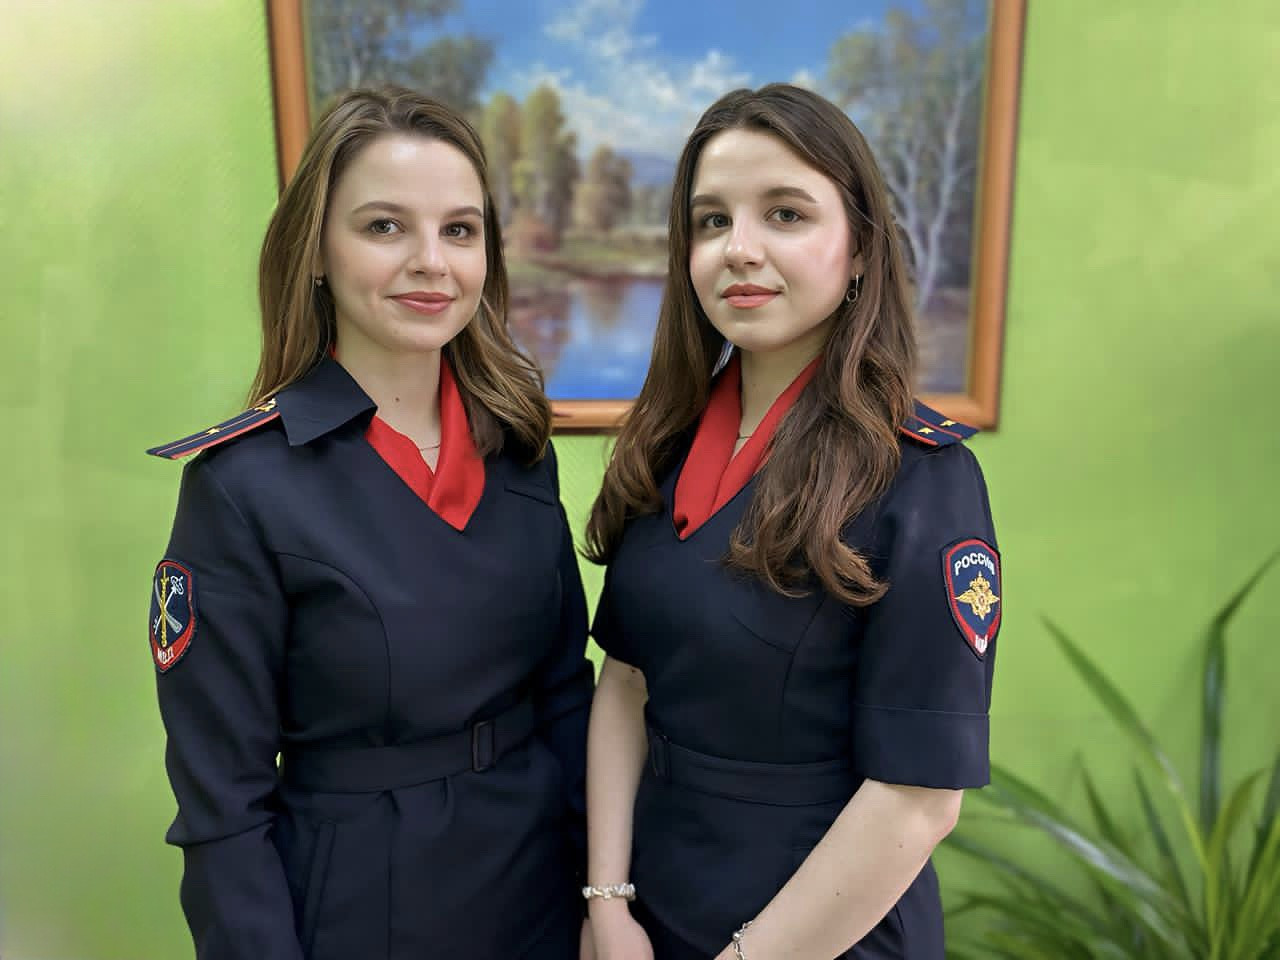 Сестры, подруги, коллеги: в полиции Нижневартовска работают близняшки